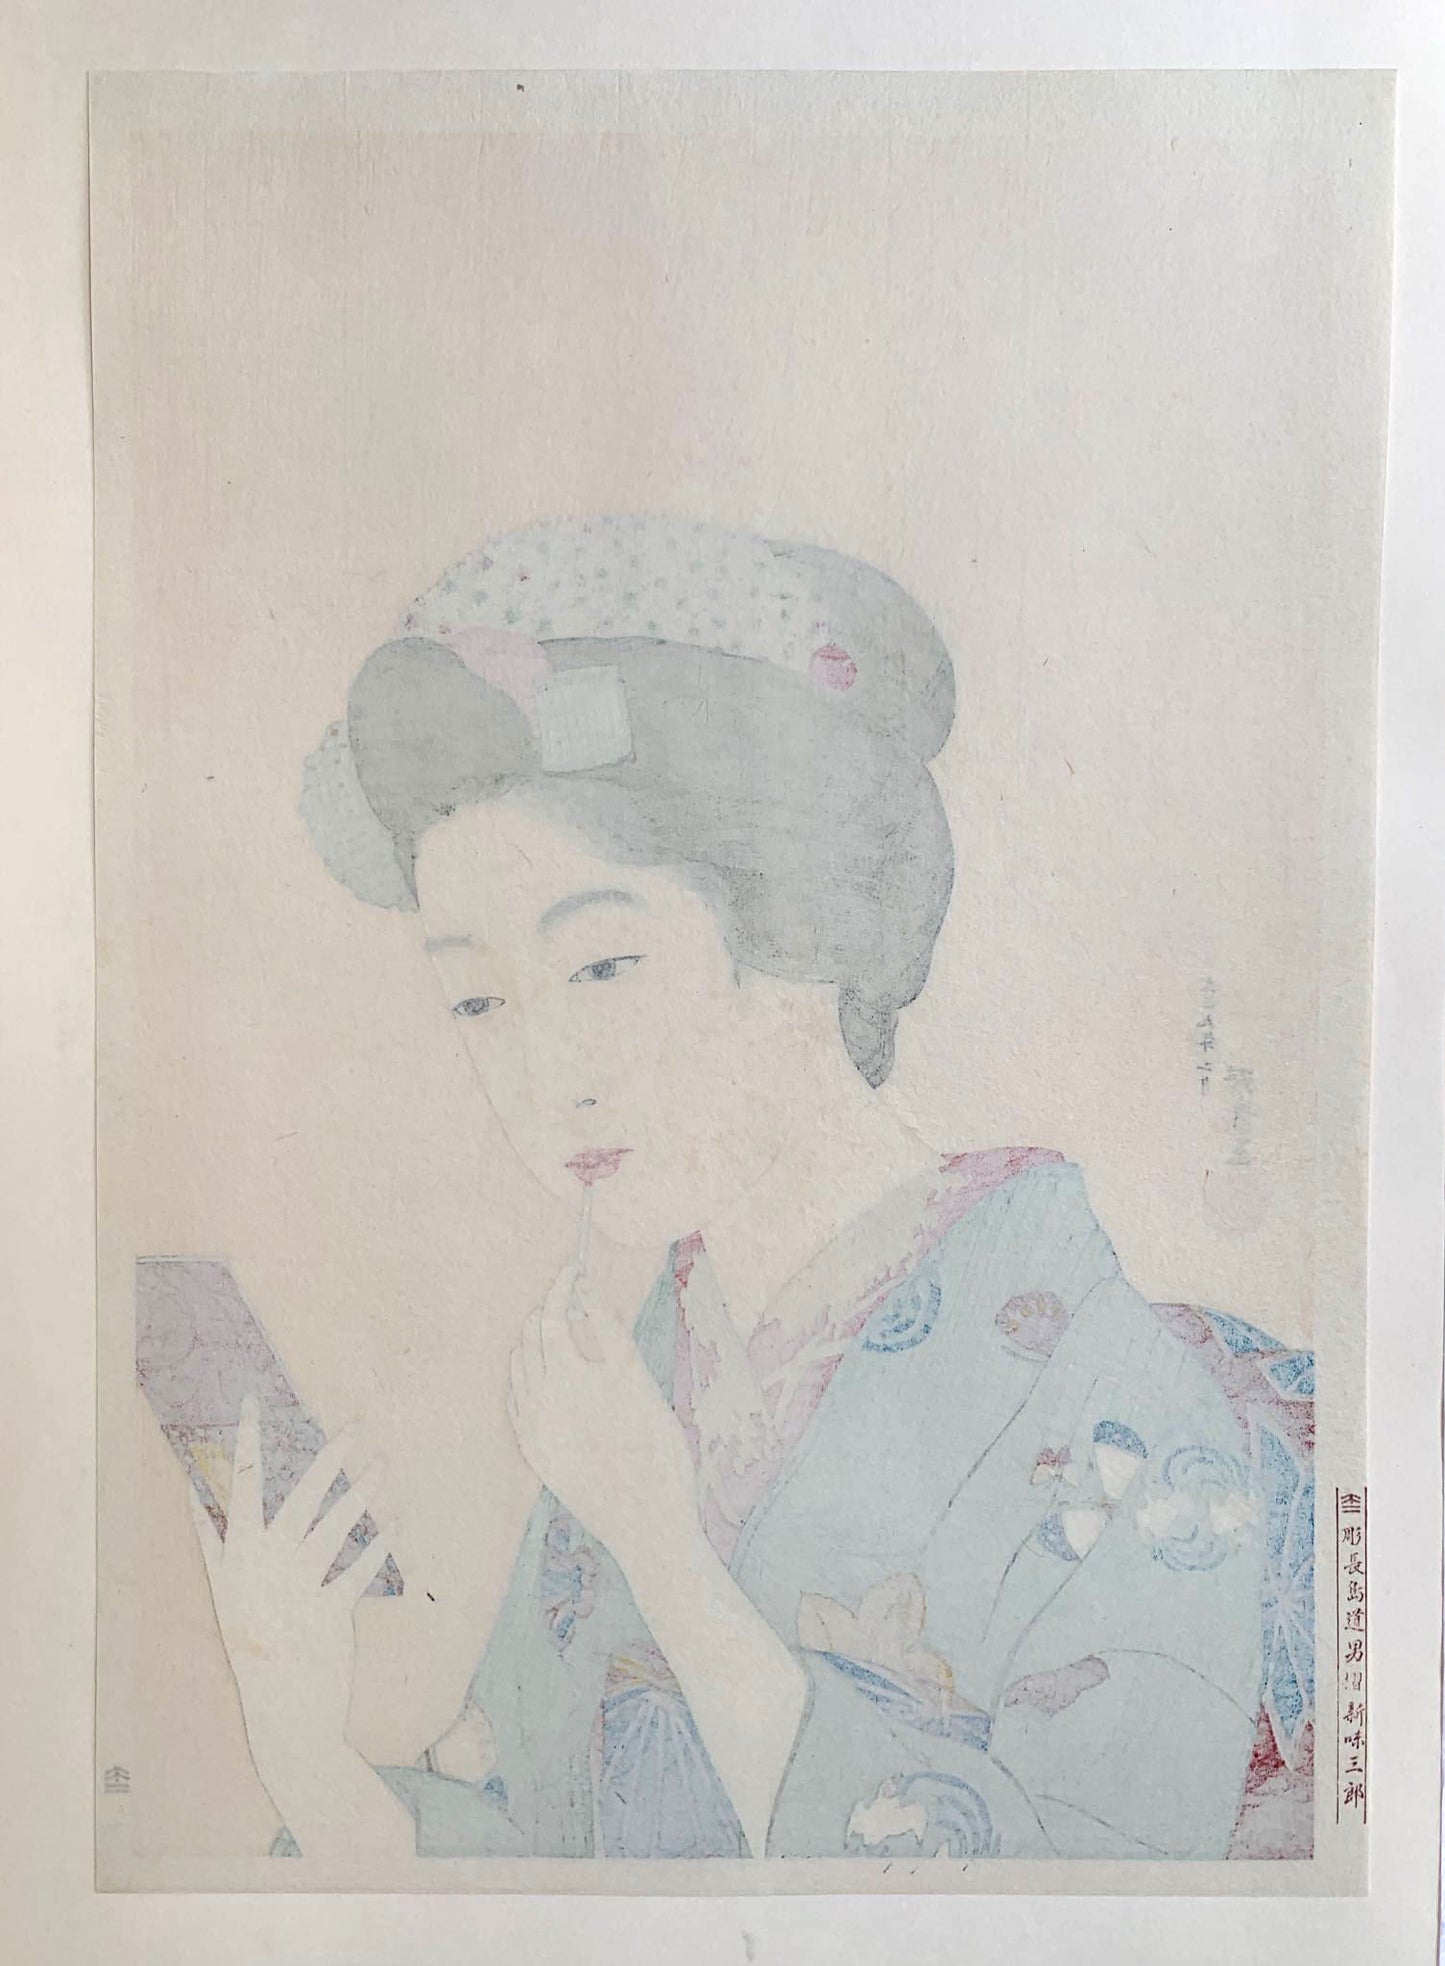 Estampe japonaise d’une femme se mettant du rouge à lèvre avec un pinceau, se regardant dans le miroir, portant un kimono vert., dos de l'estampe